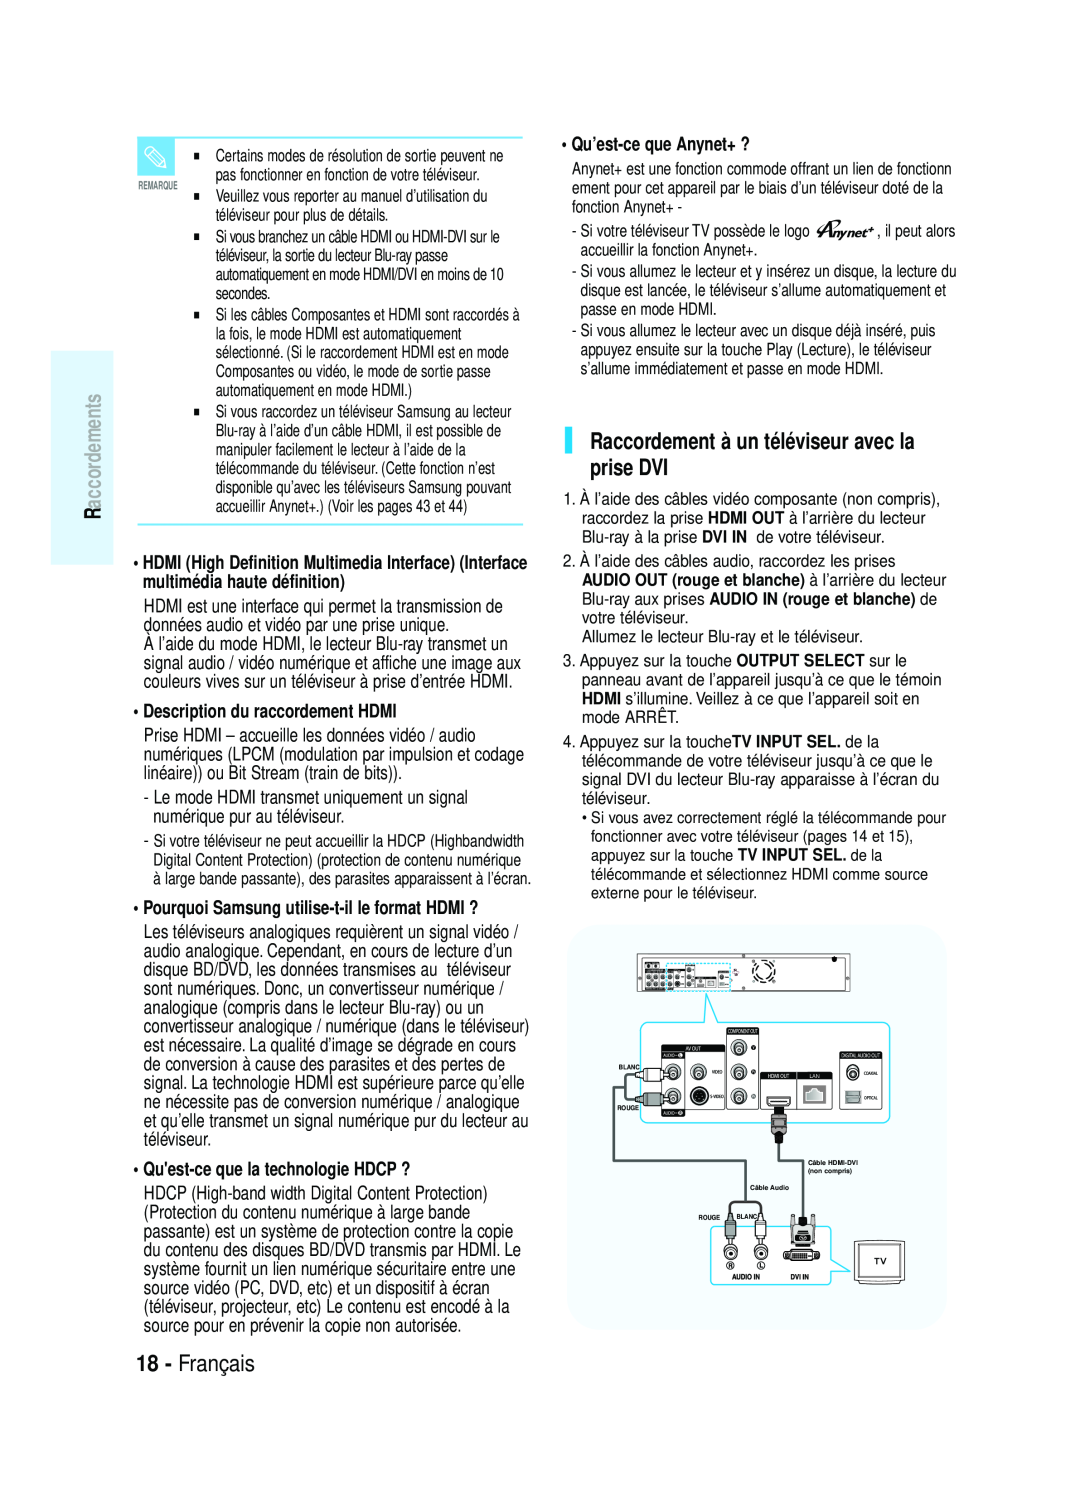 Samsung AK68-01357B manual Français, Description du raccordement HDMI, Prise HDMI - accueille les données vidéo / audio 